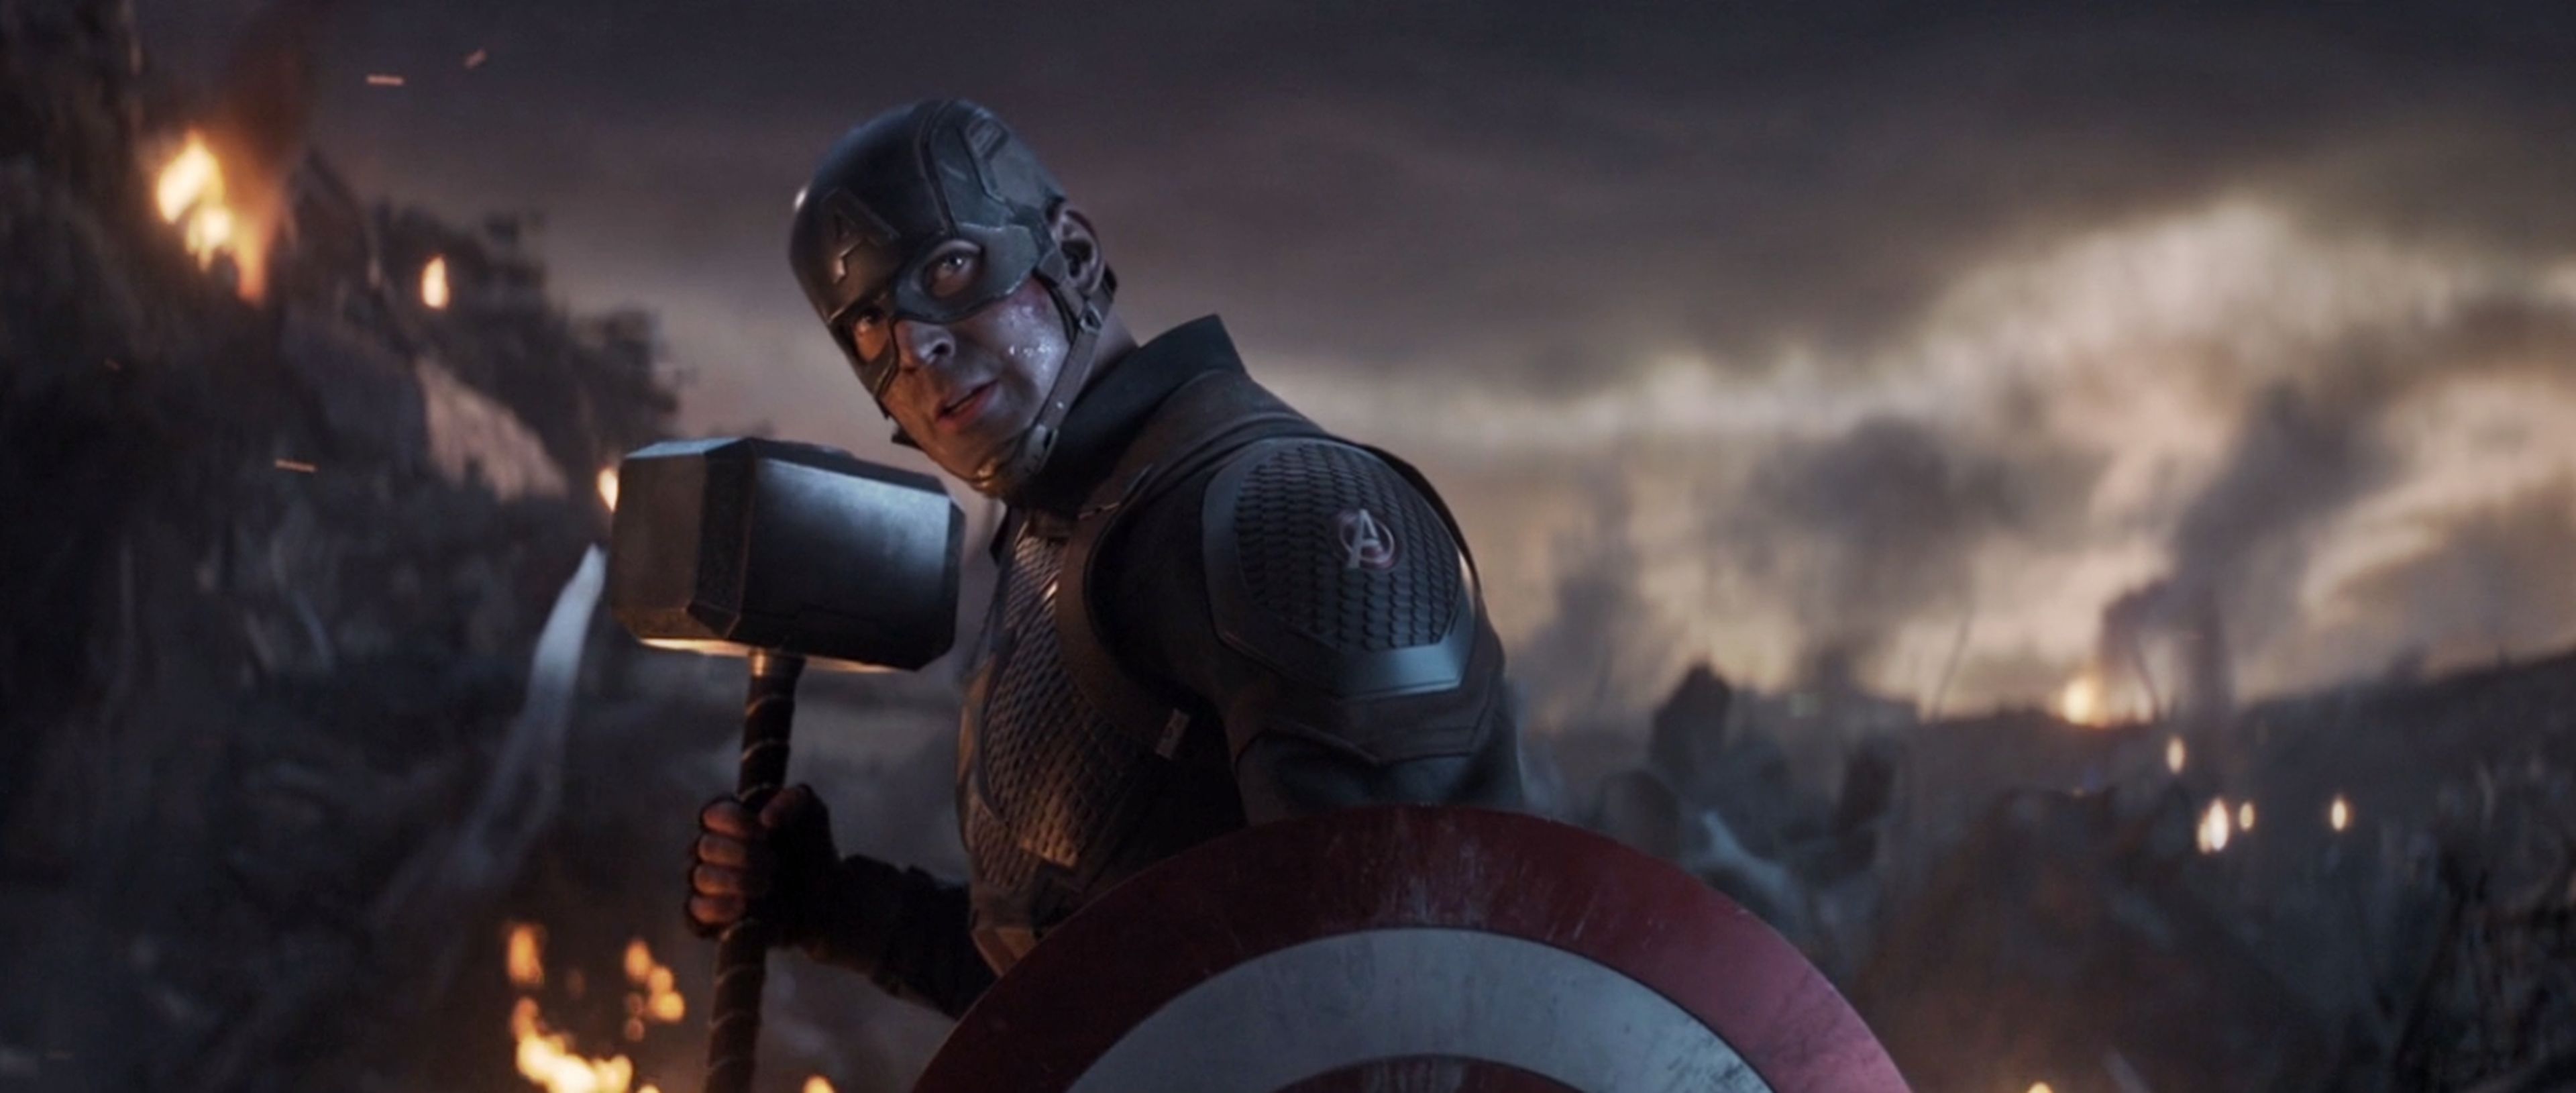 Vengadores Endgame - Capitán América empuñando el Mjolnir